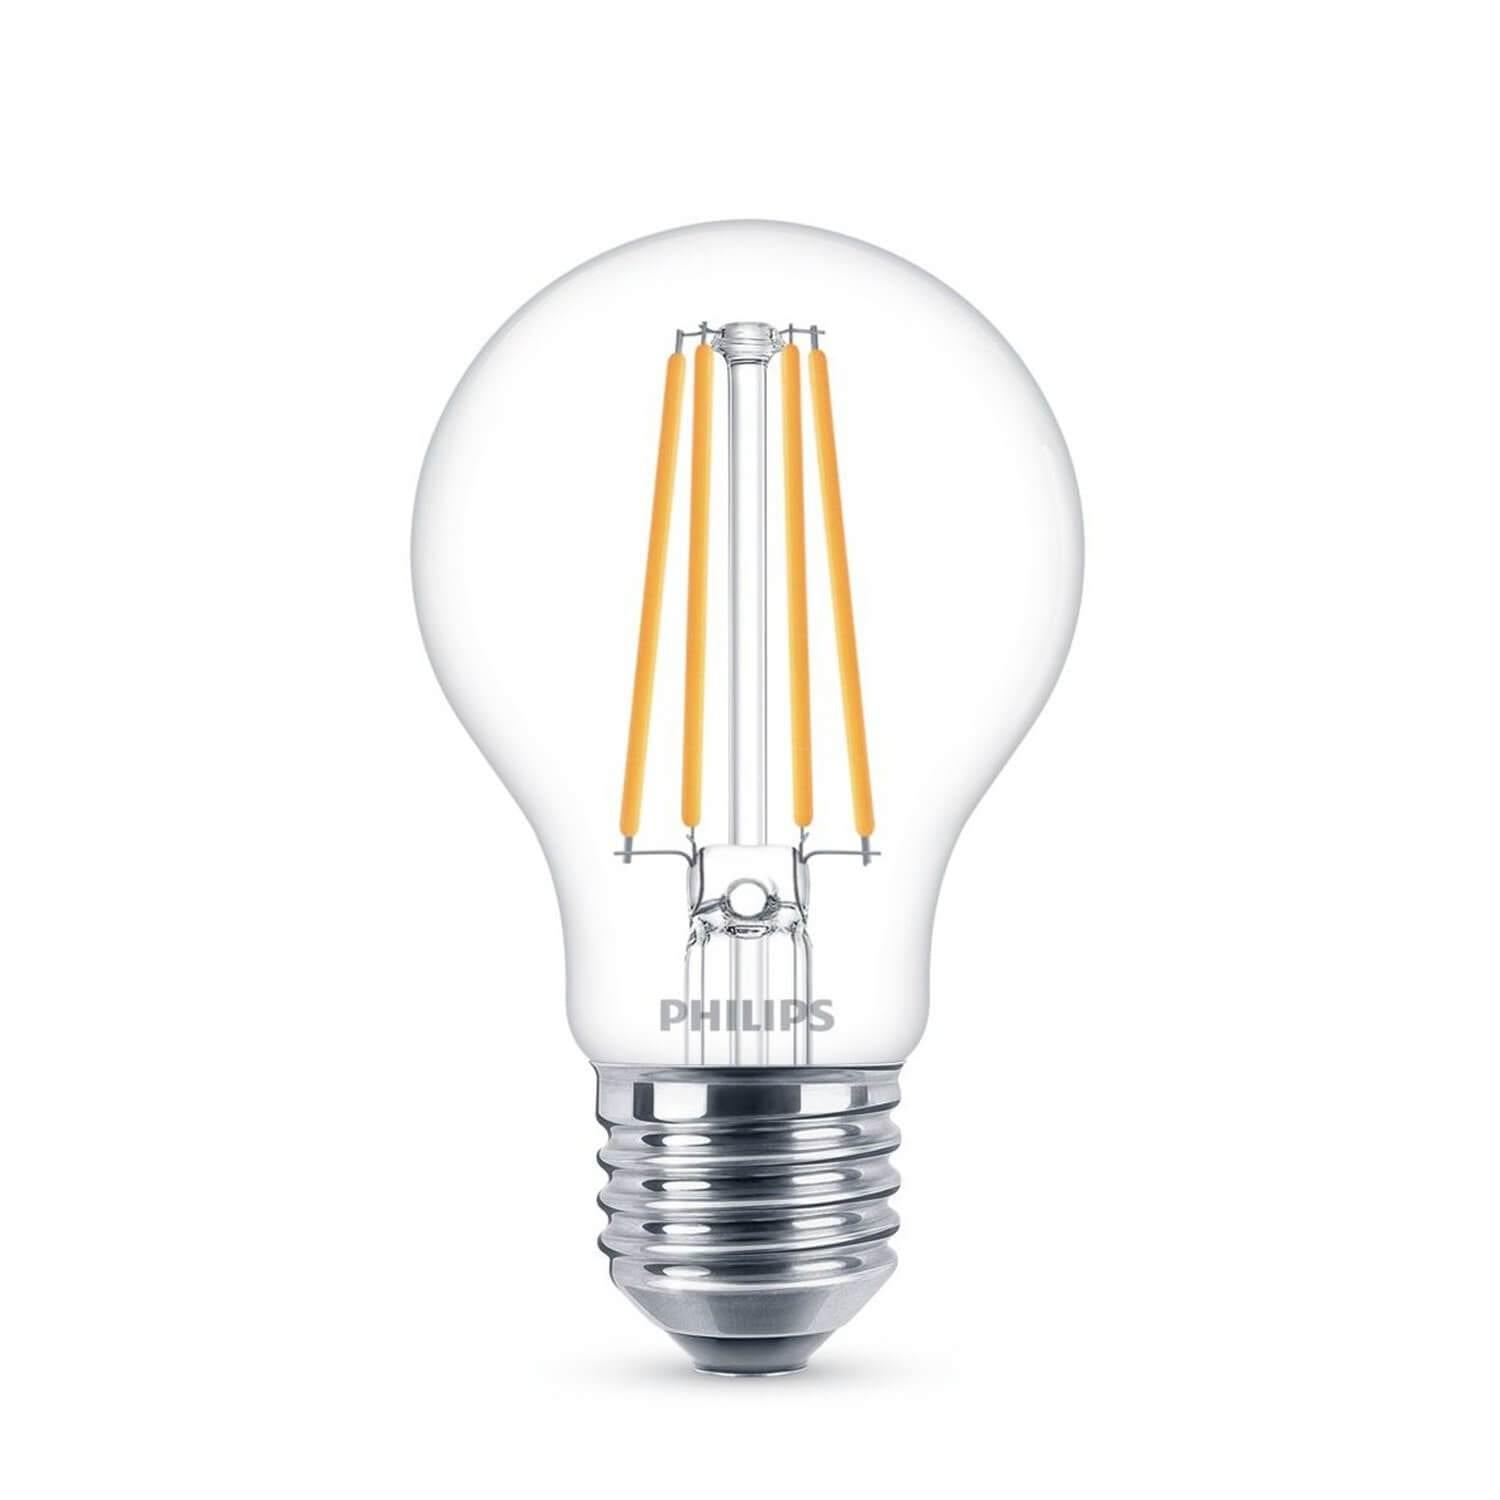 Domicilio Bec LED Philips A60 E27 7W 806 lumeni, cu filament pentru lustre, corpuri de iluminat, veioze sau lampadare